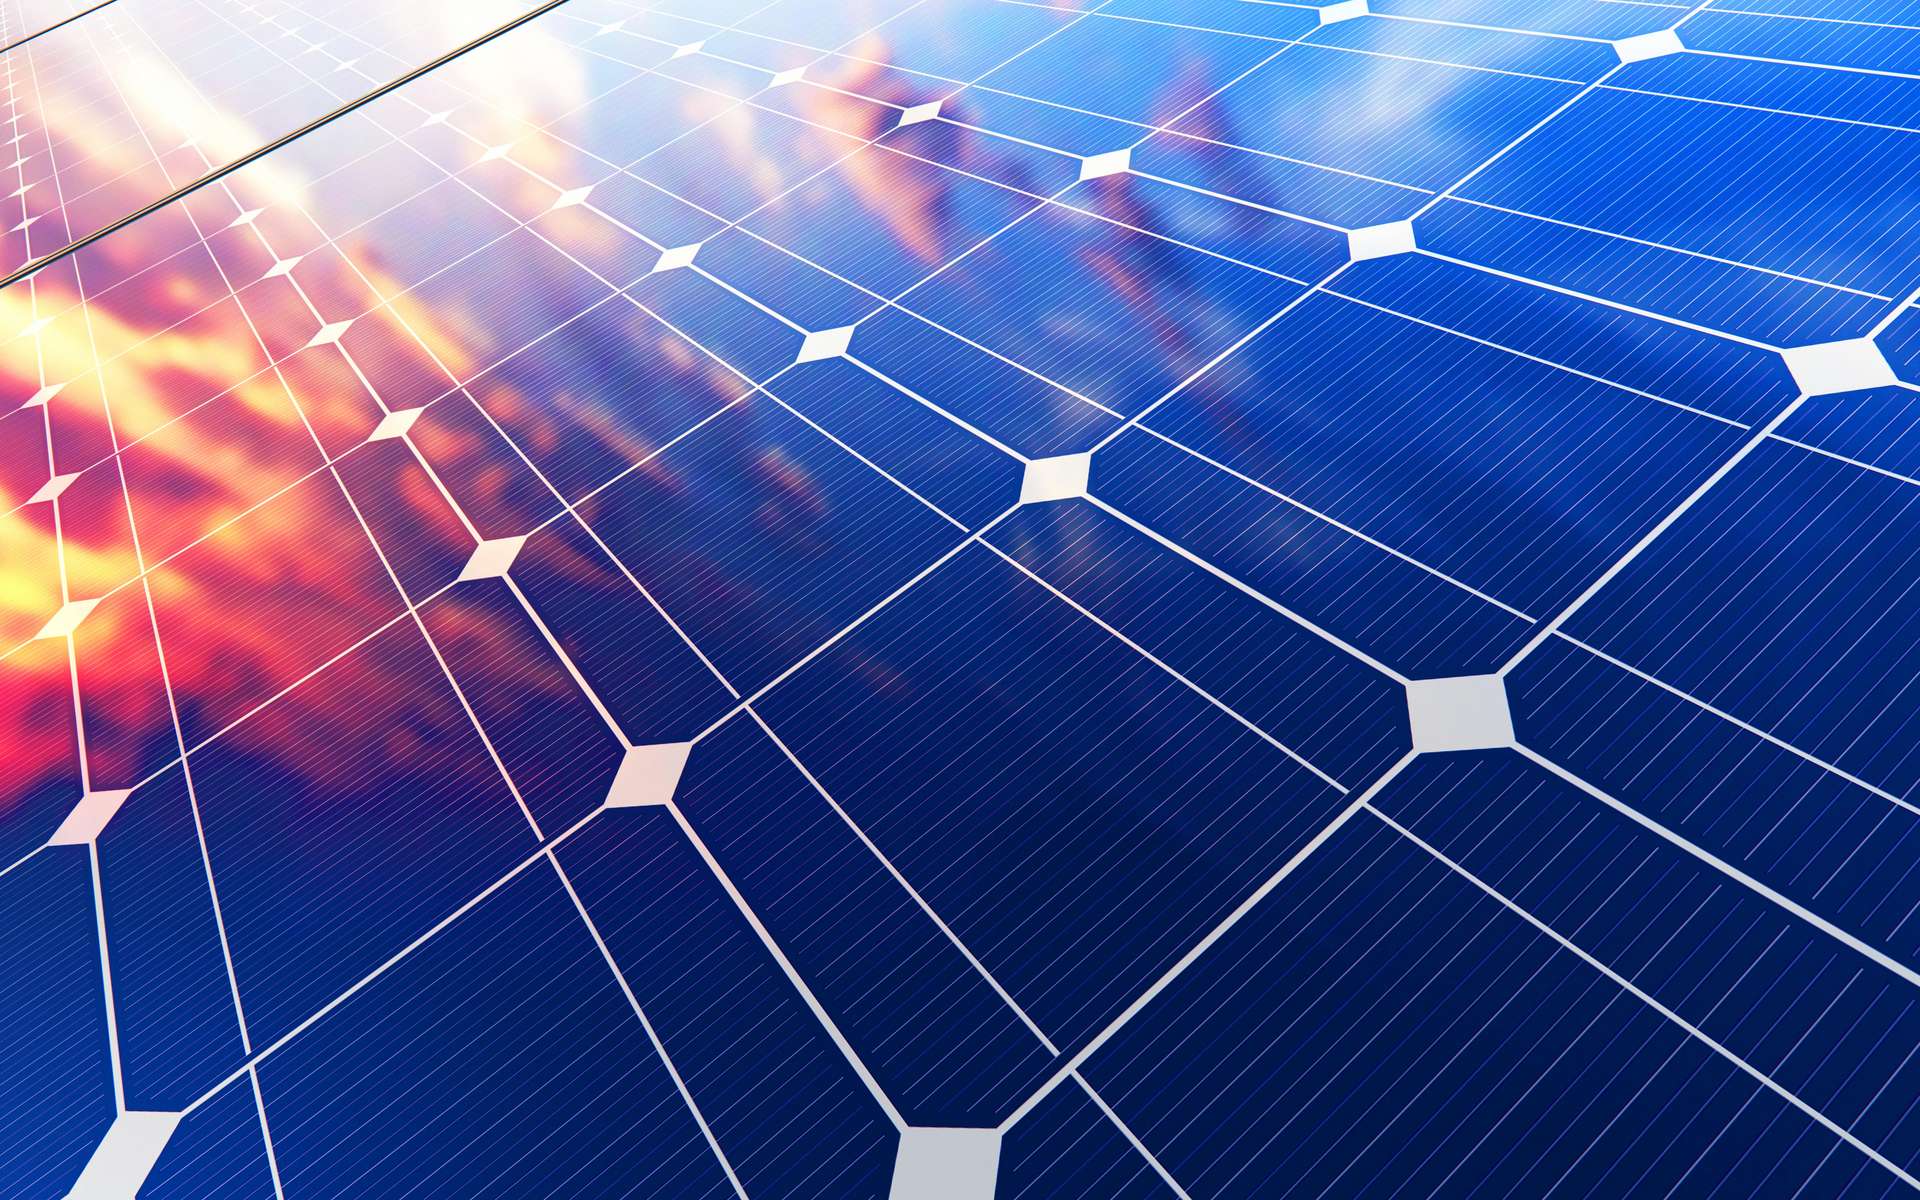 Des panneaux solaires équipés de générateurs thermoélectriques peuvent produire de l’électricité la nuit. © Scanrail, Adobe Stock